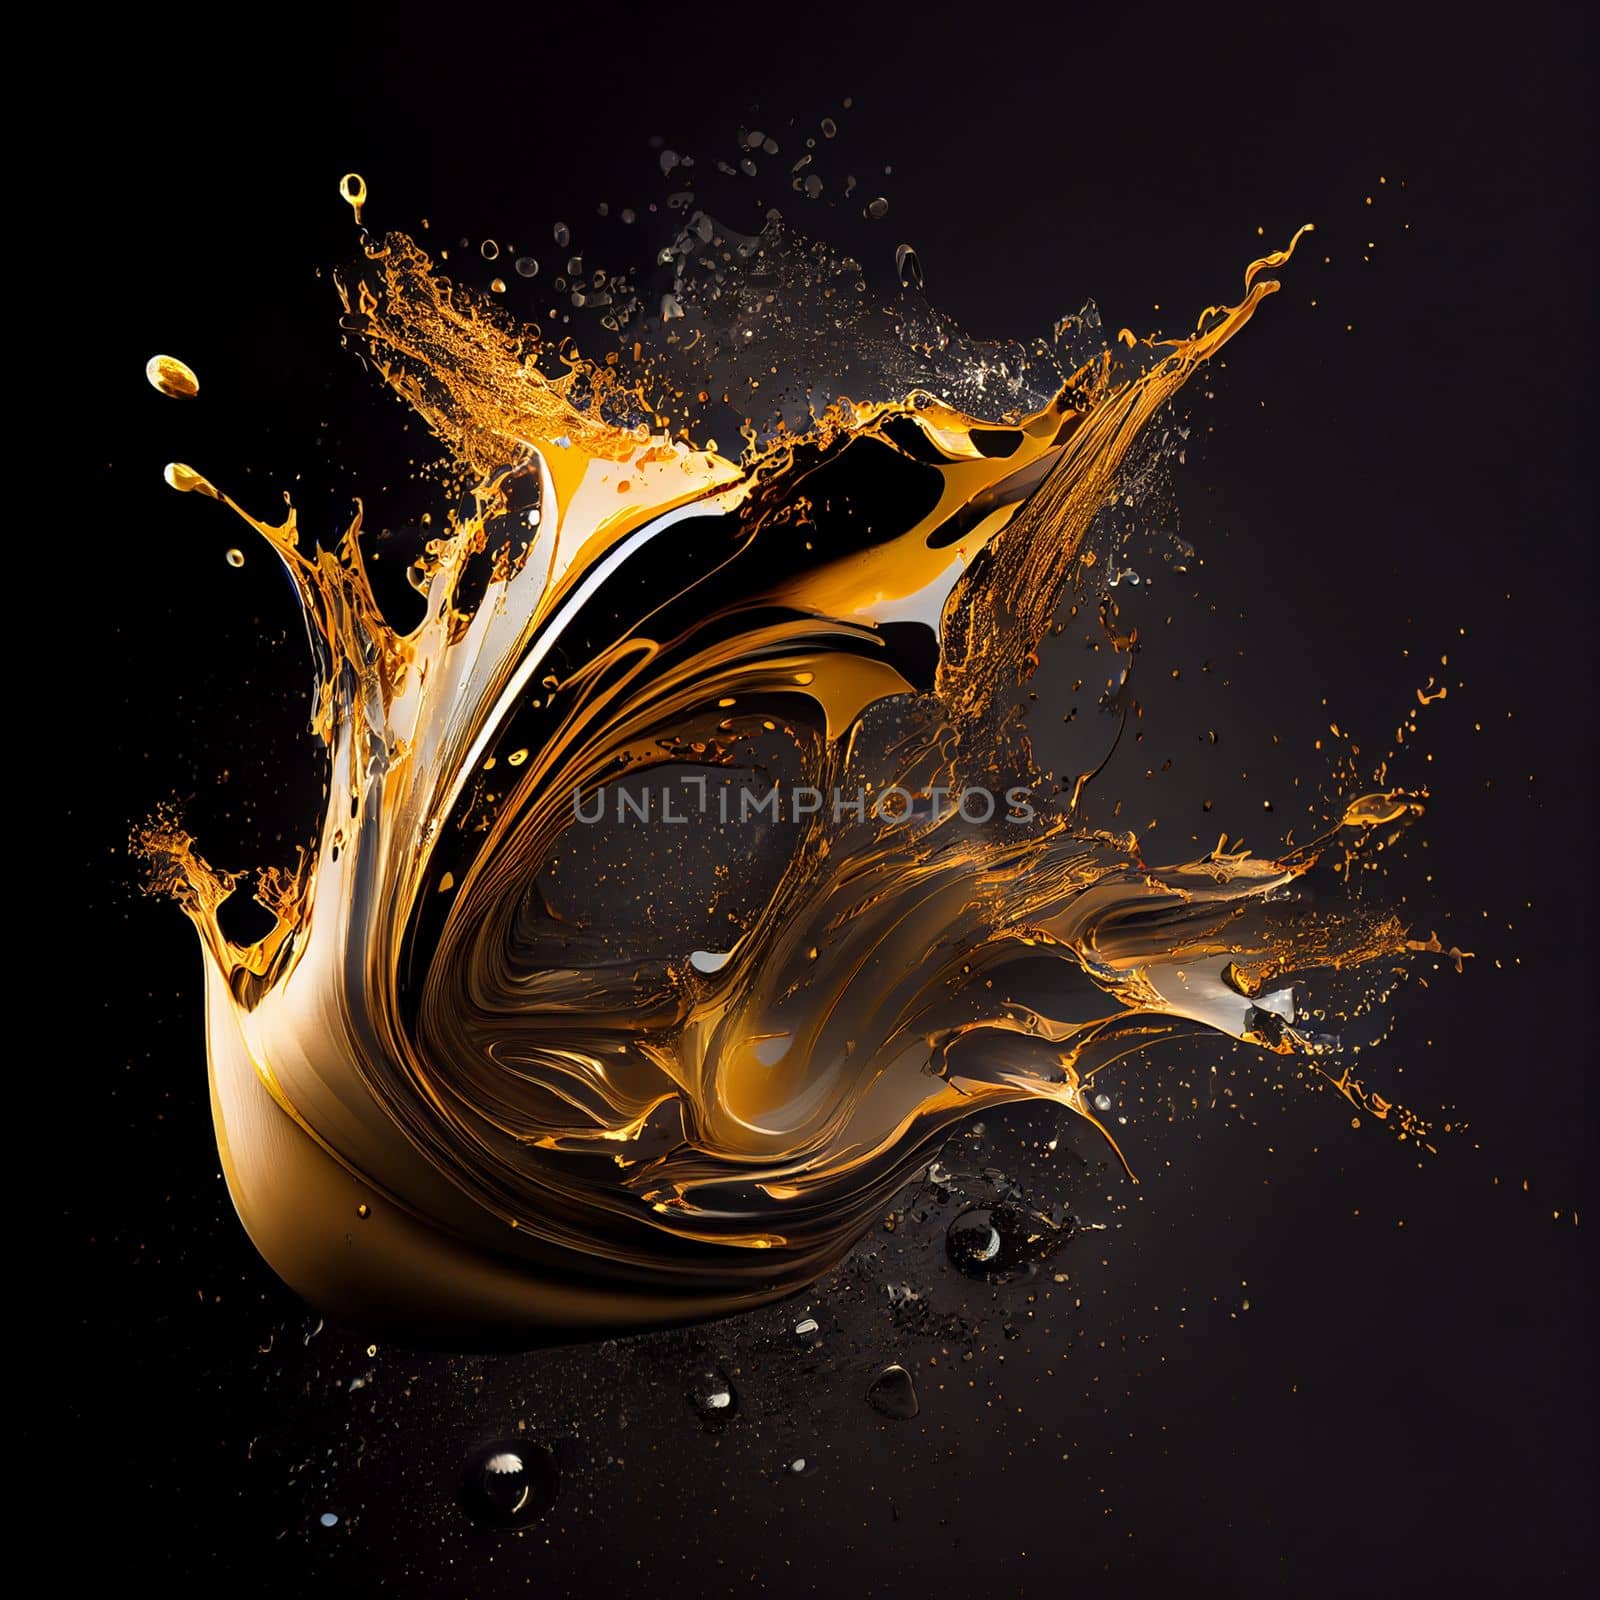 Black gold splashes on black background by studiodav